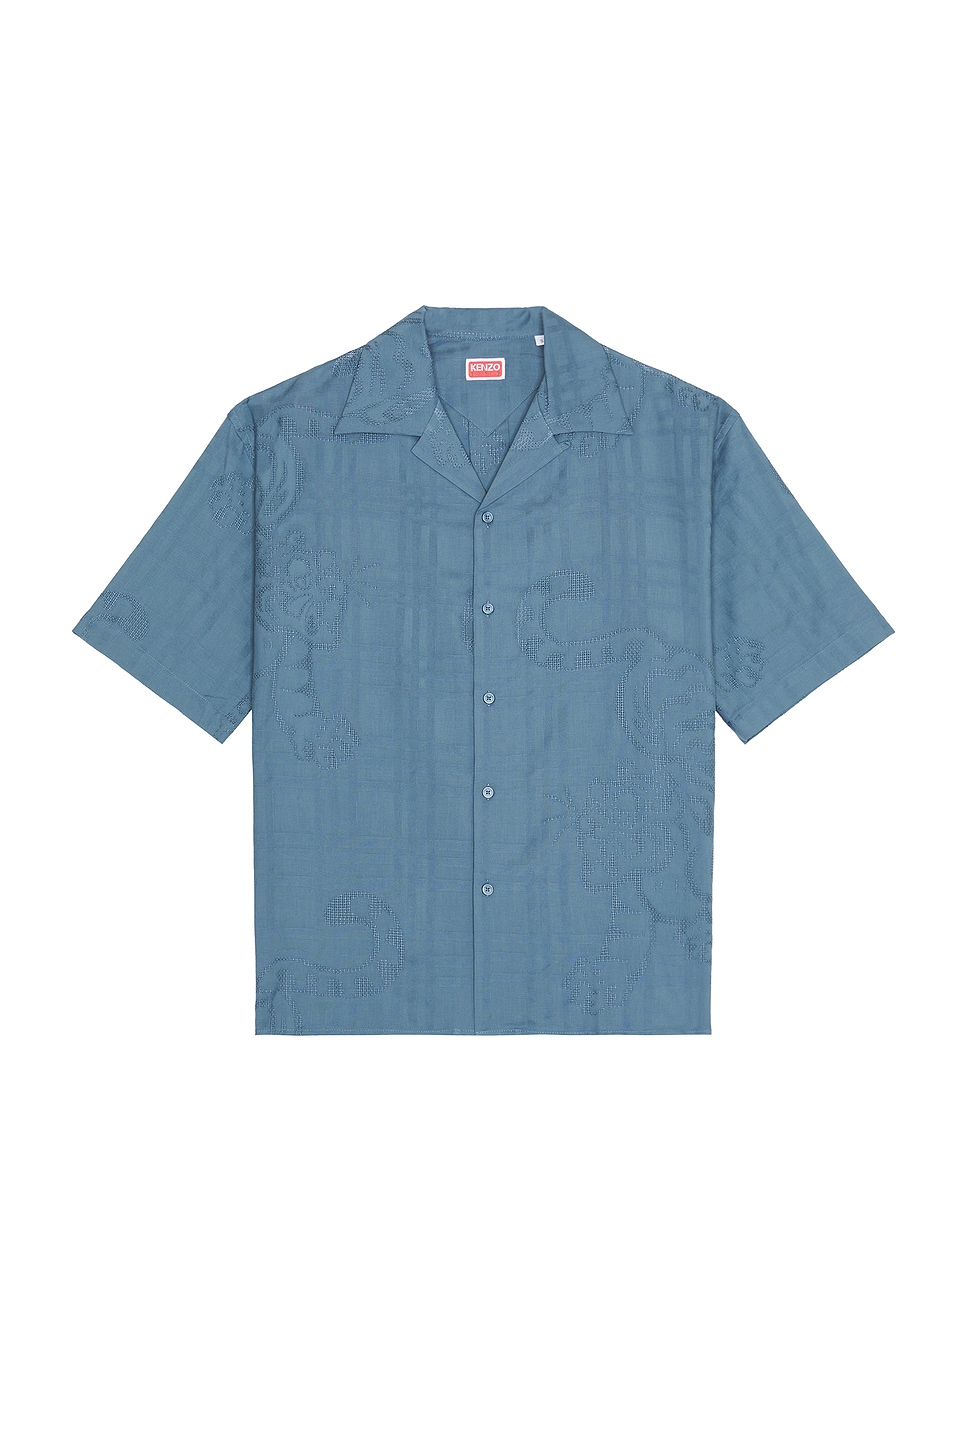 Bamboo Tiger Hawaiian Short Sleeve Shirt in Blue